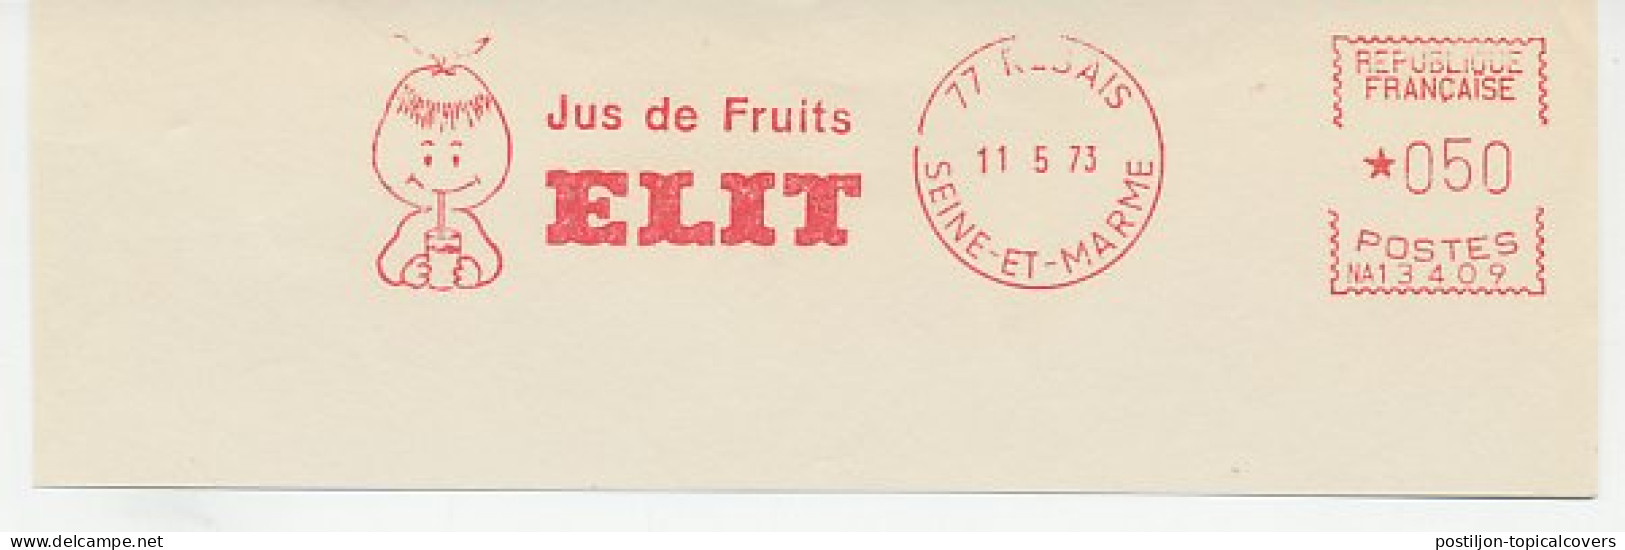 Meter Cut France 1973 Fruit Drink - Fruit